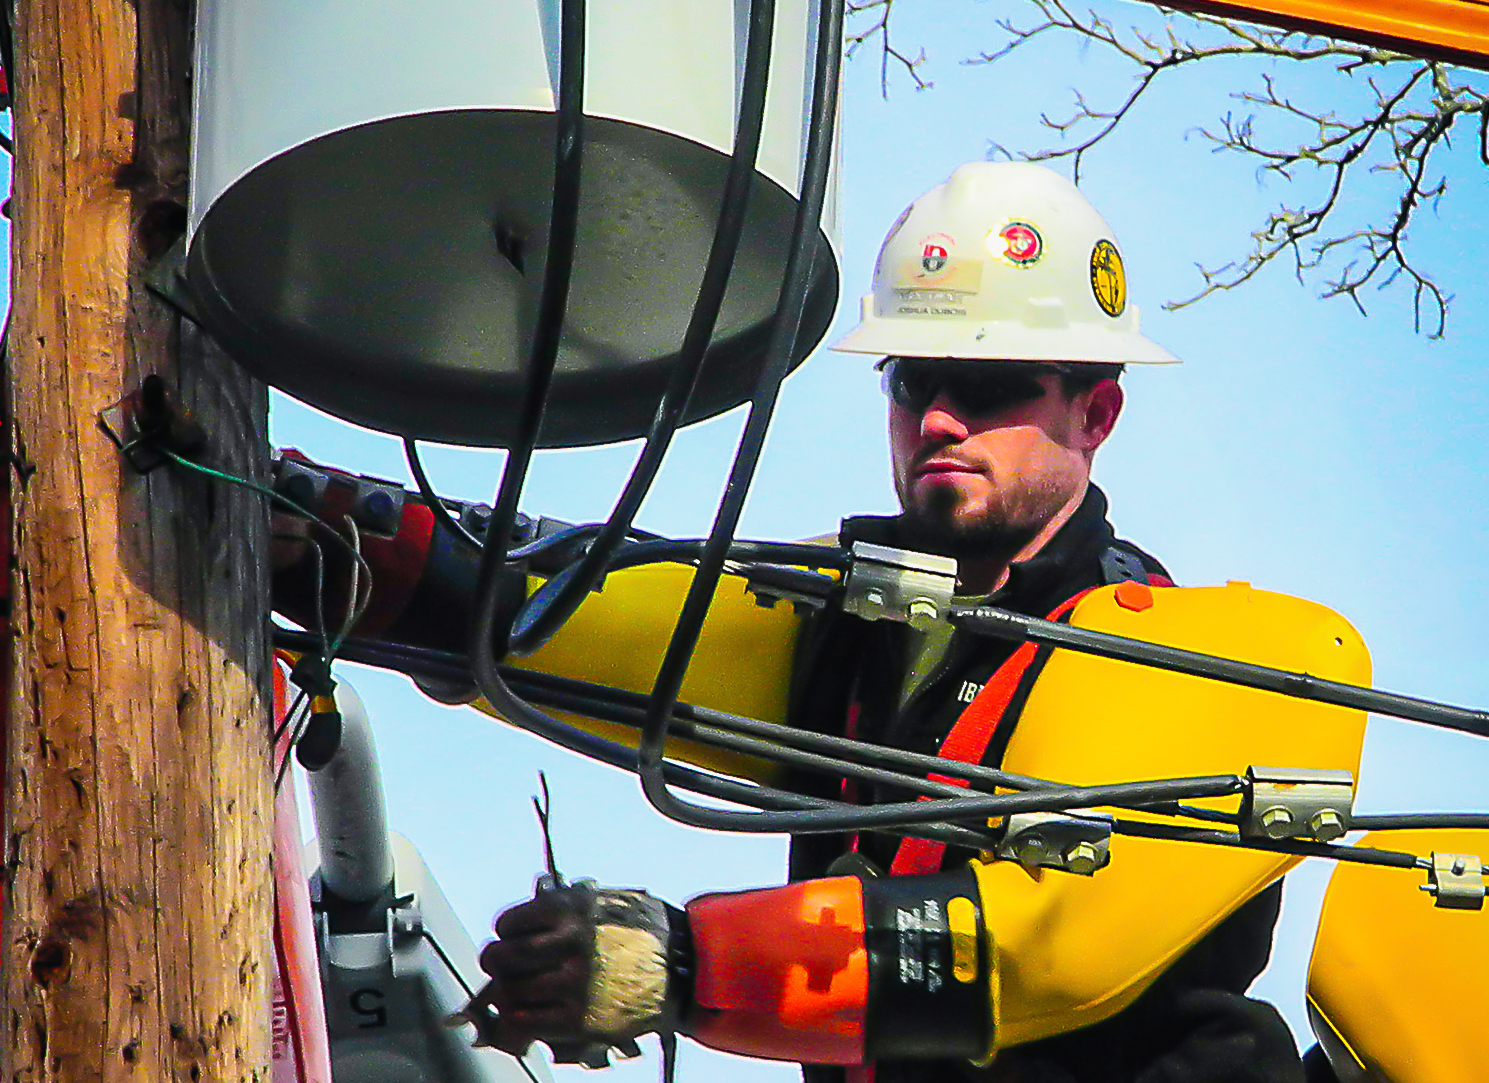 Restoration worker adjusting cables on a power line